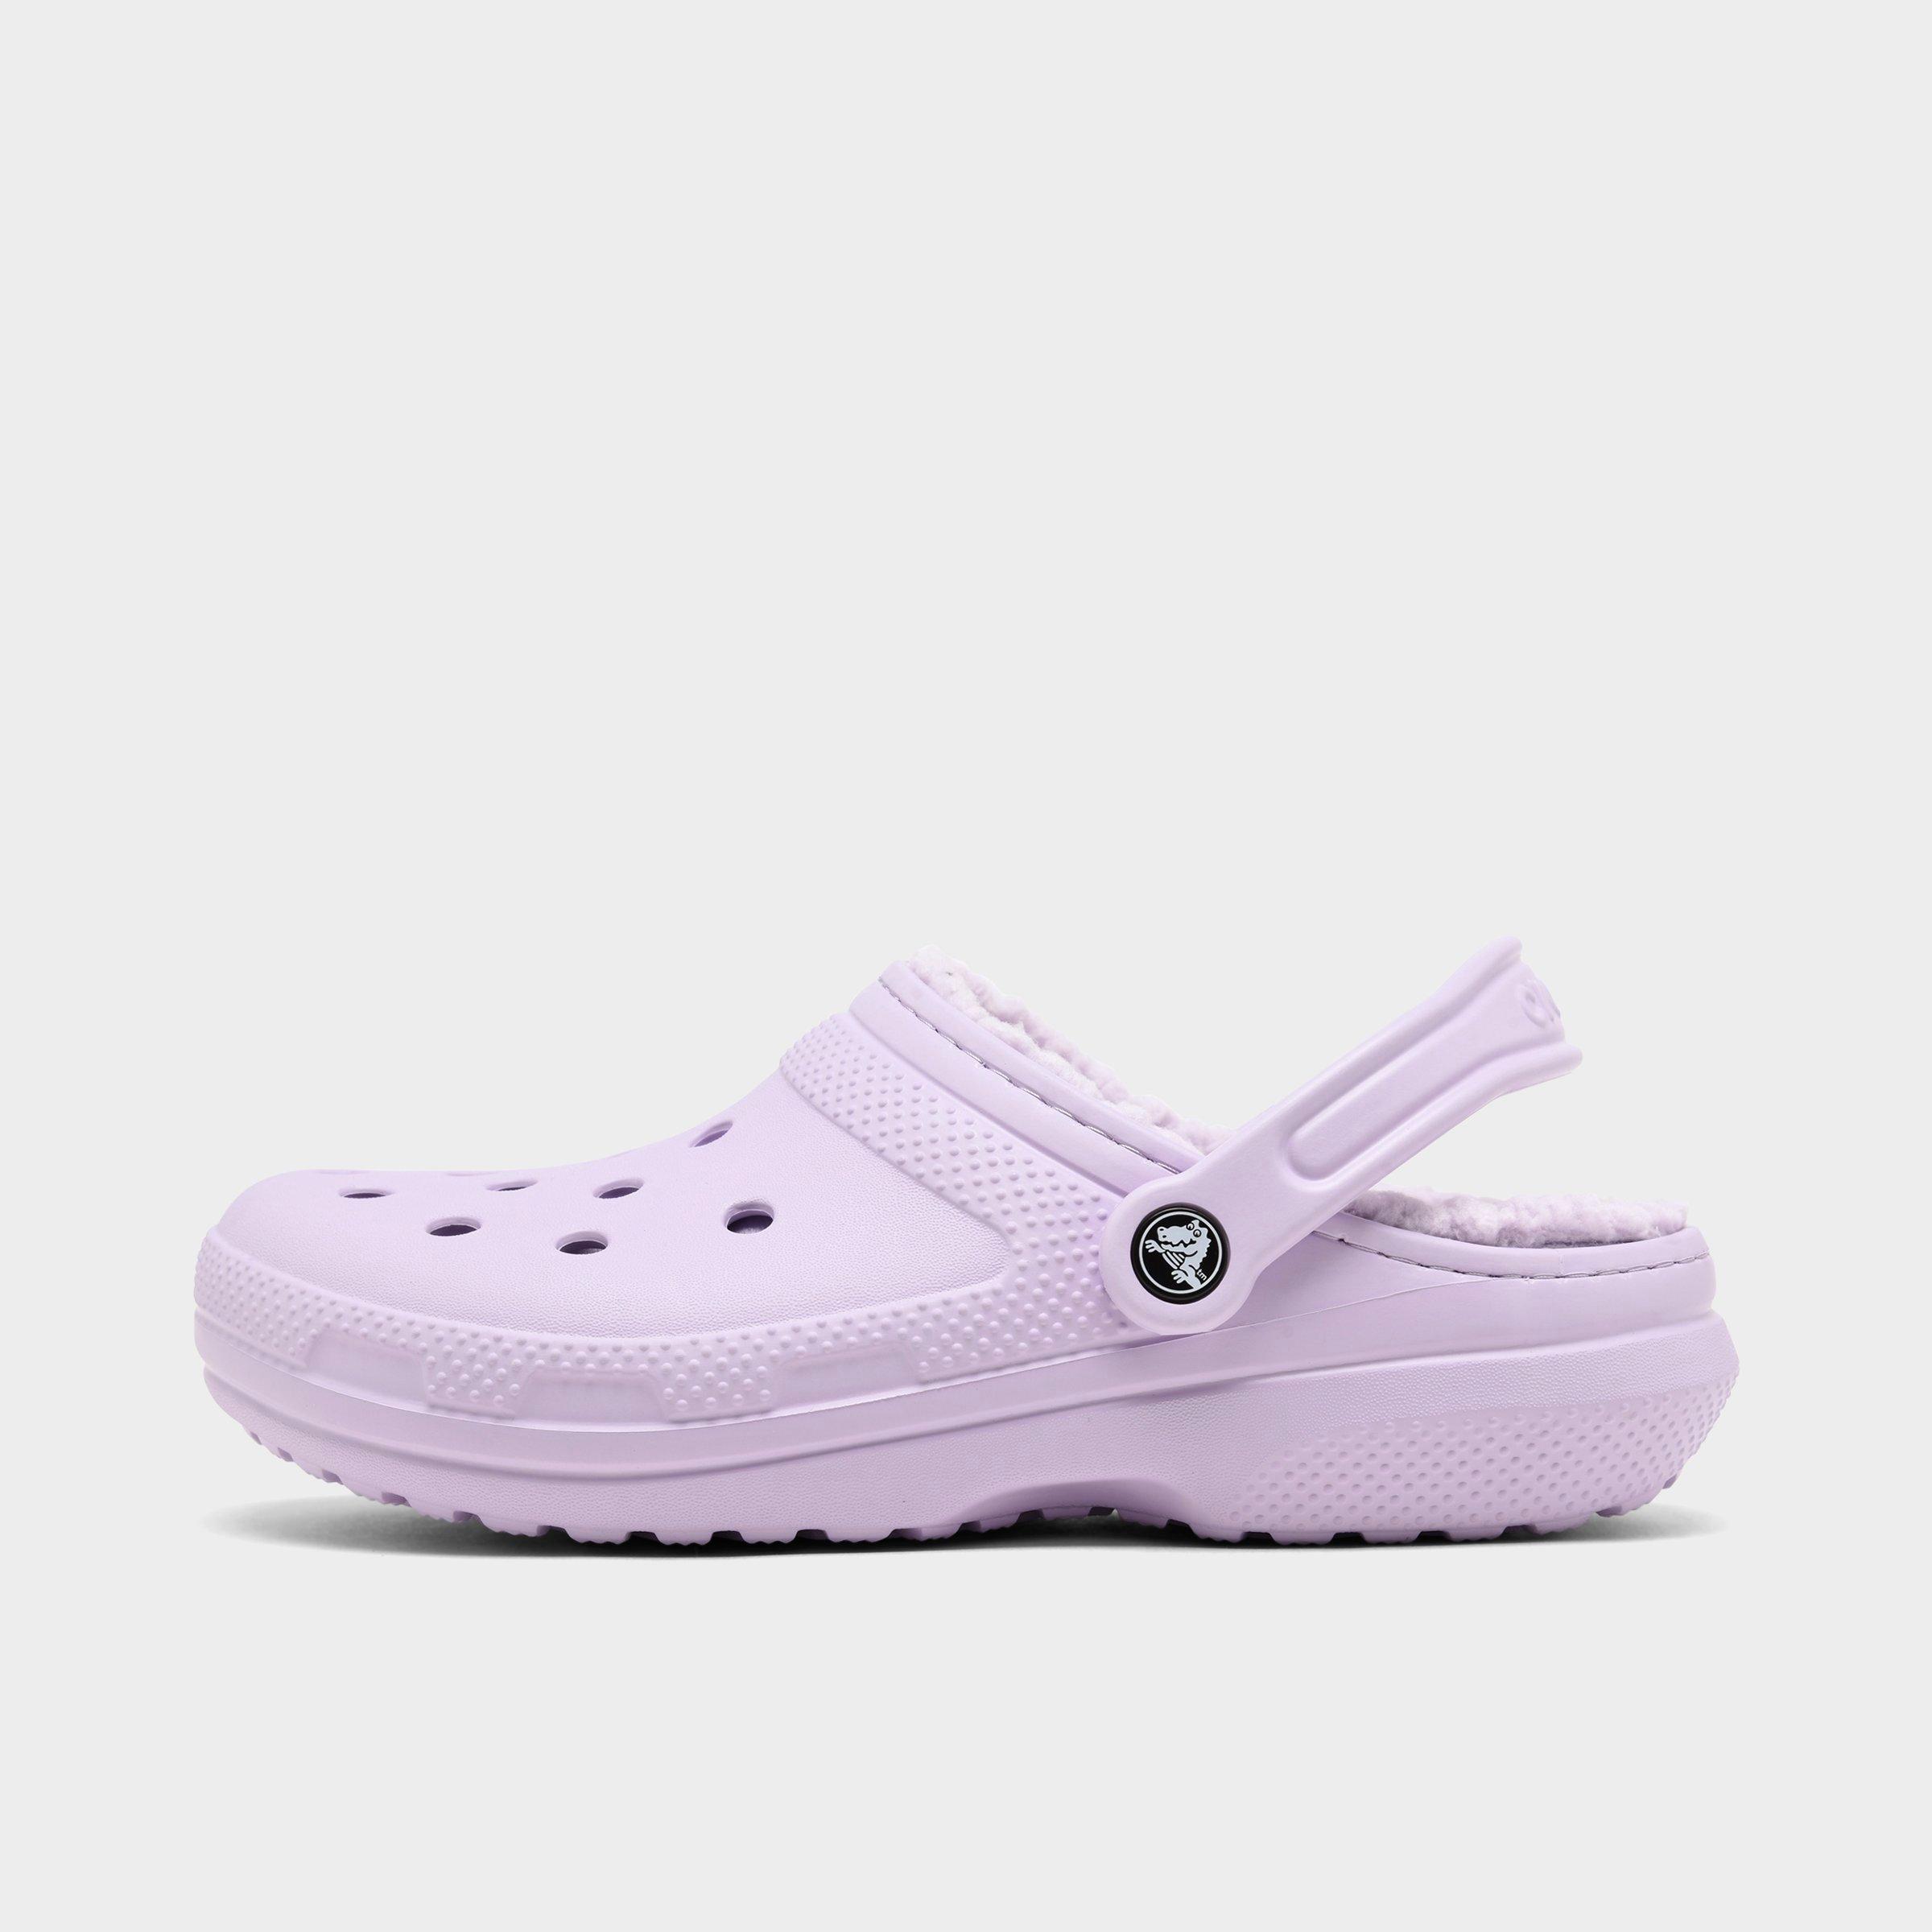 lavender crocs size 8